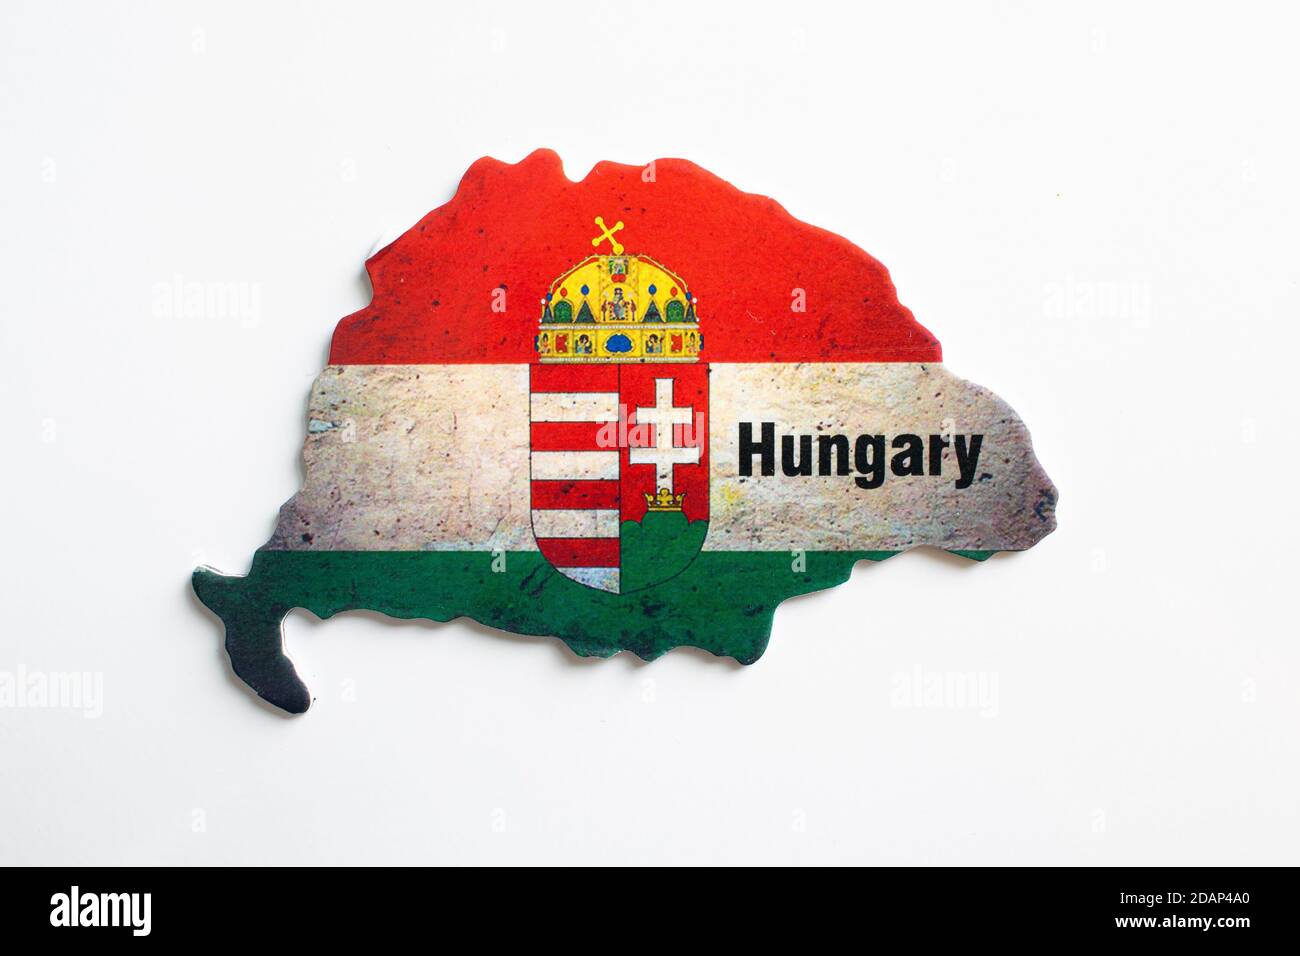 https://c8.alamy.com/compde/2dap4a0/magnetaufkleber-mit-dem-wappen-den-farben-der-flagge-und-den-grenzen-des-alten-ungarn-2dap4a0.jpg